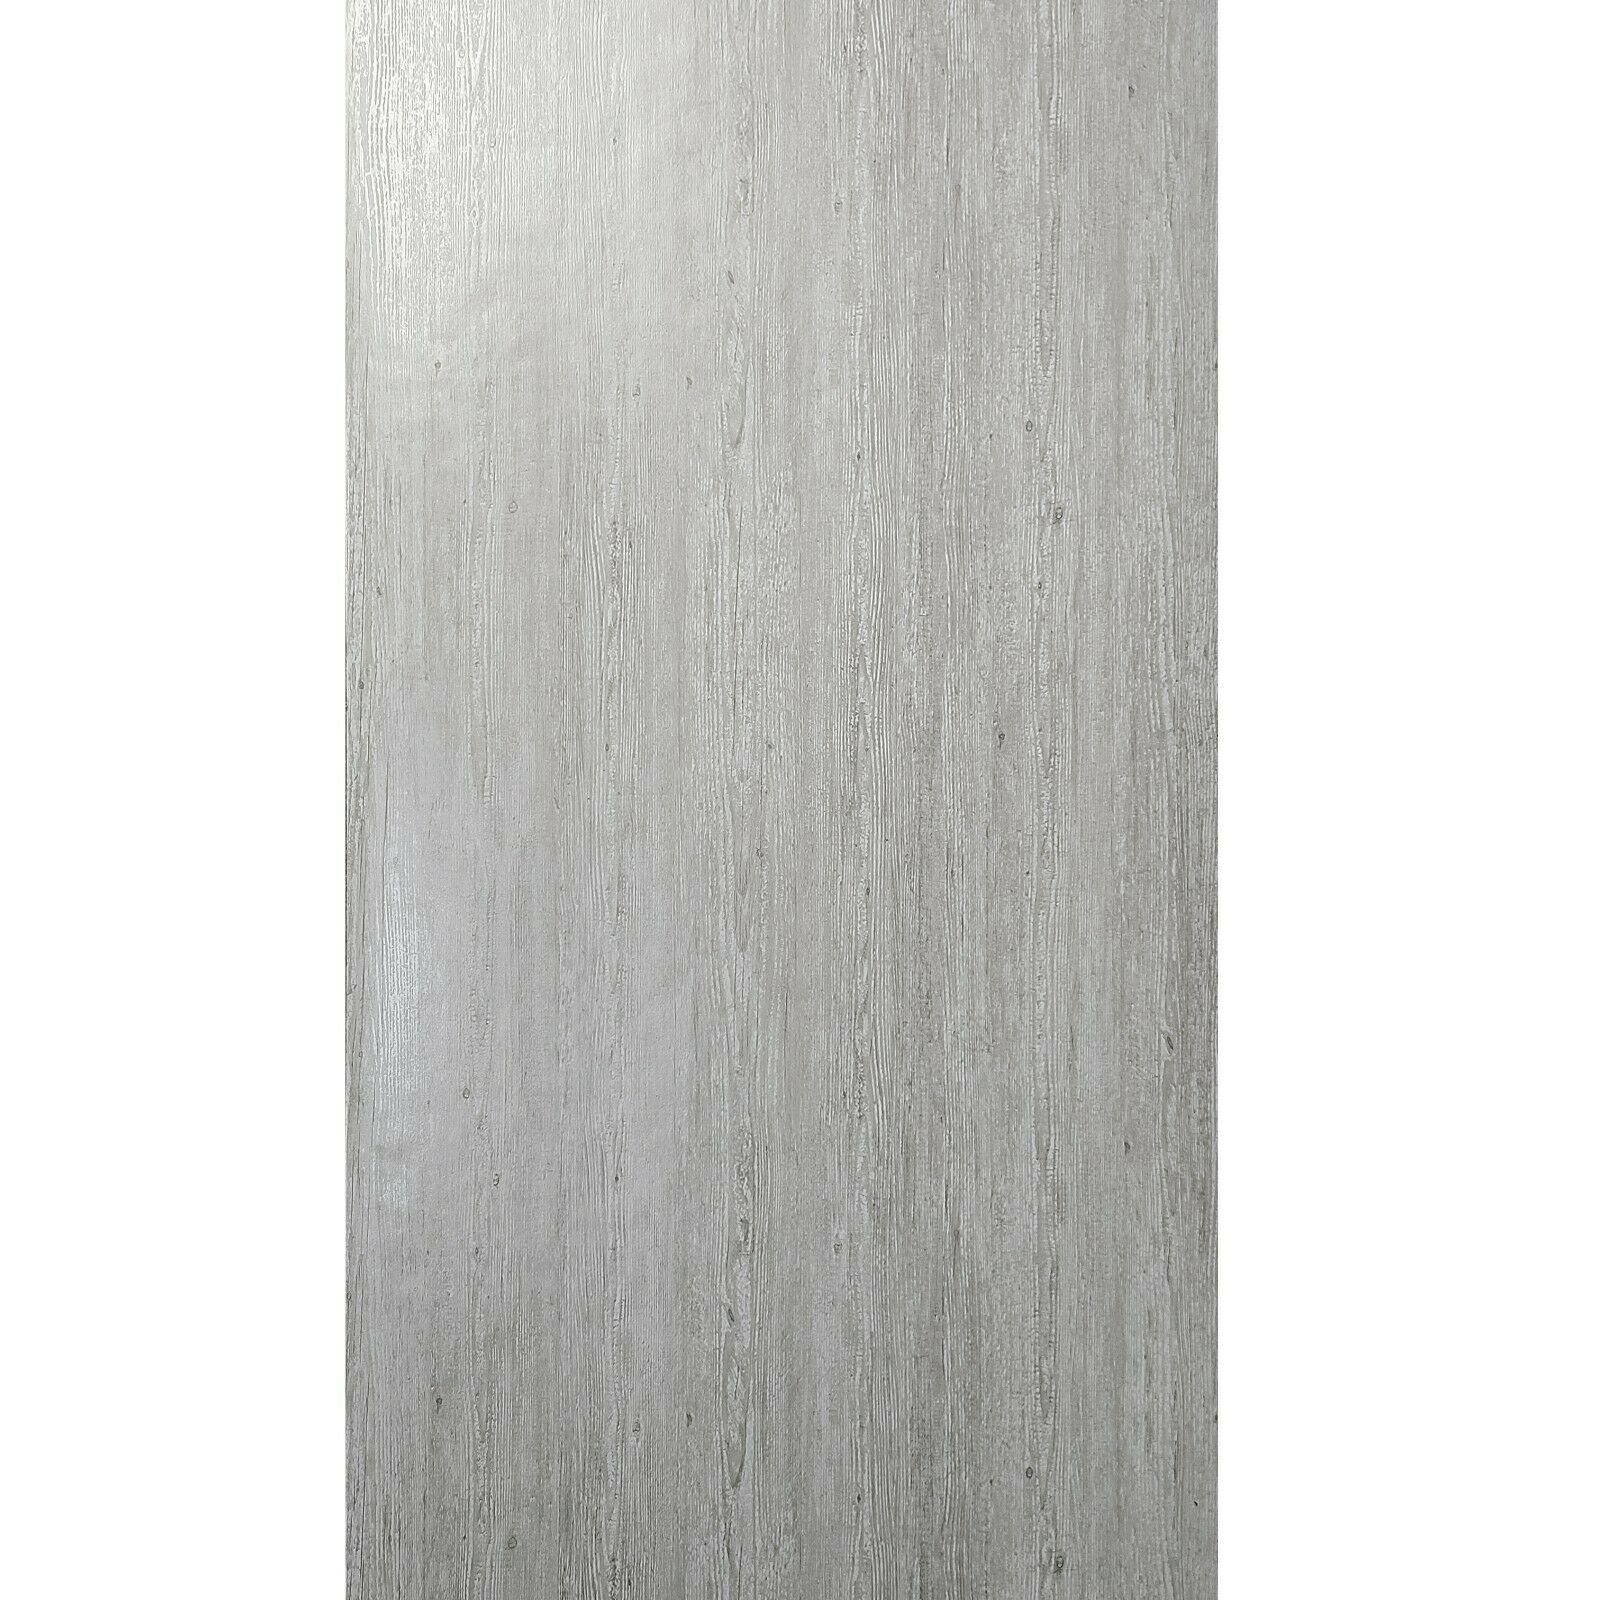 WMSD50302201 Industrial gloss grayish tan faux distressed wood 